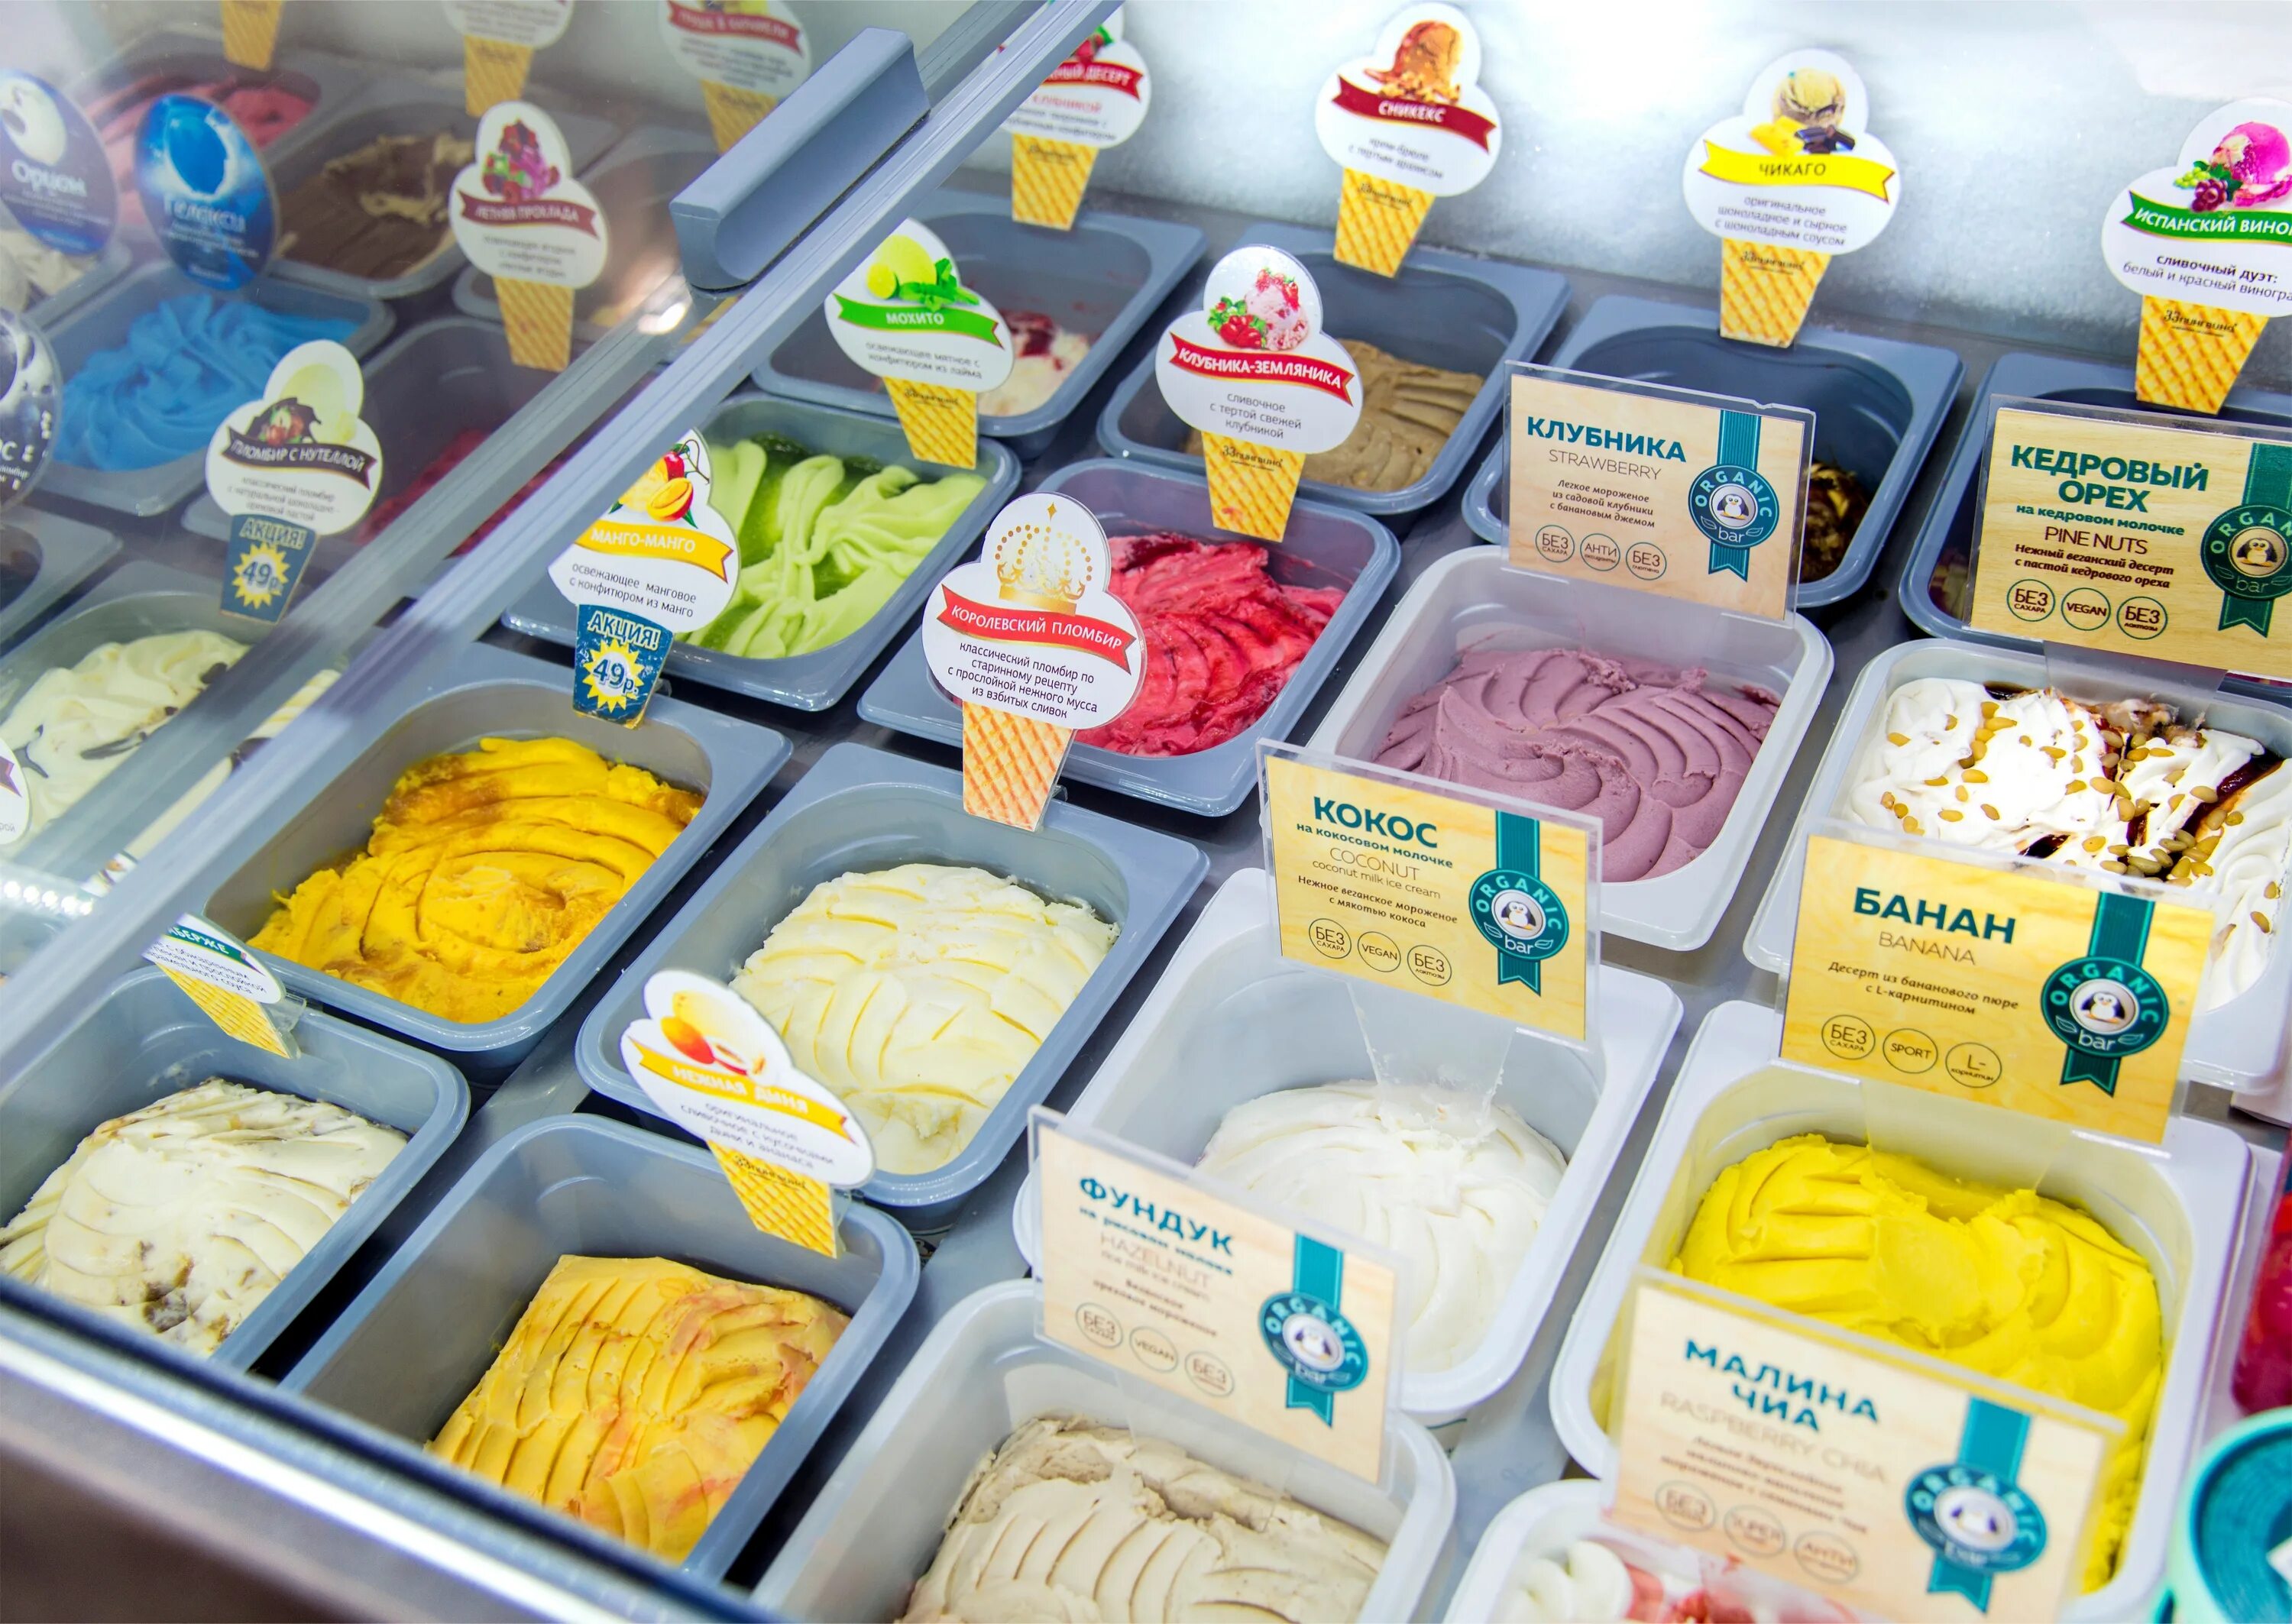 Где купить замороженную. 33 Пингвина мороженое. Кафе мороженое 33 пингвина. Ассортимент мороженого 33 пингвина. Сырное мороженое 33 пингвина.